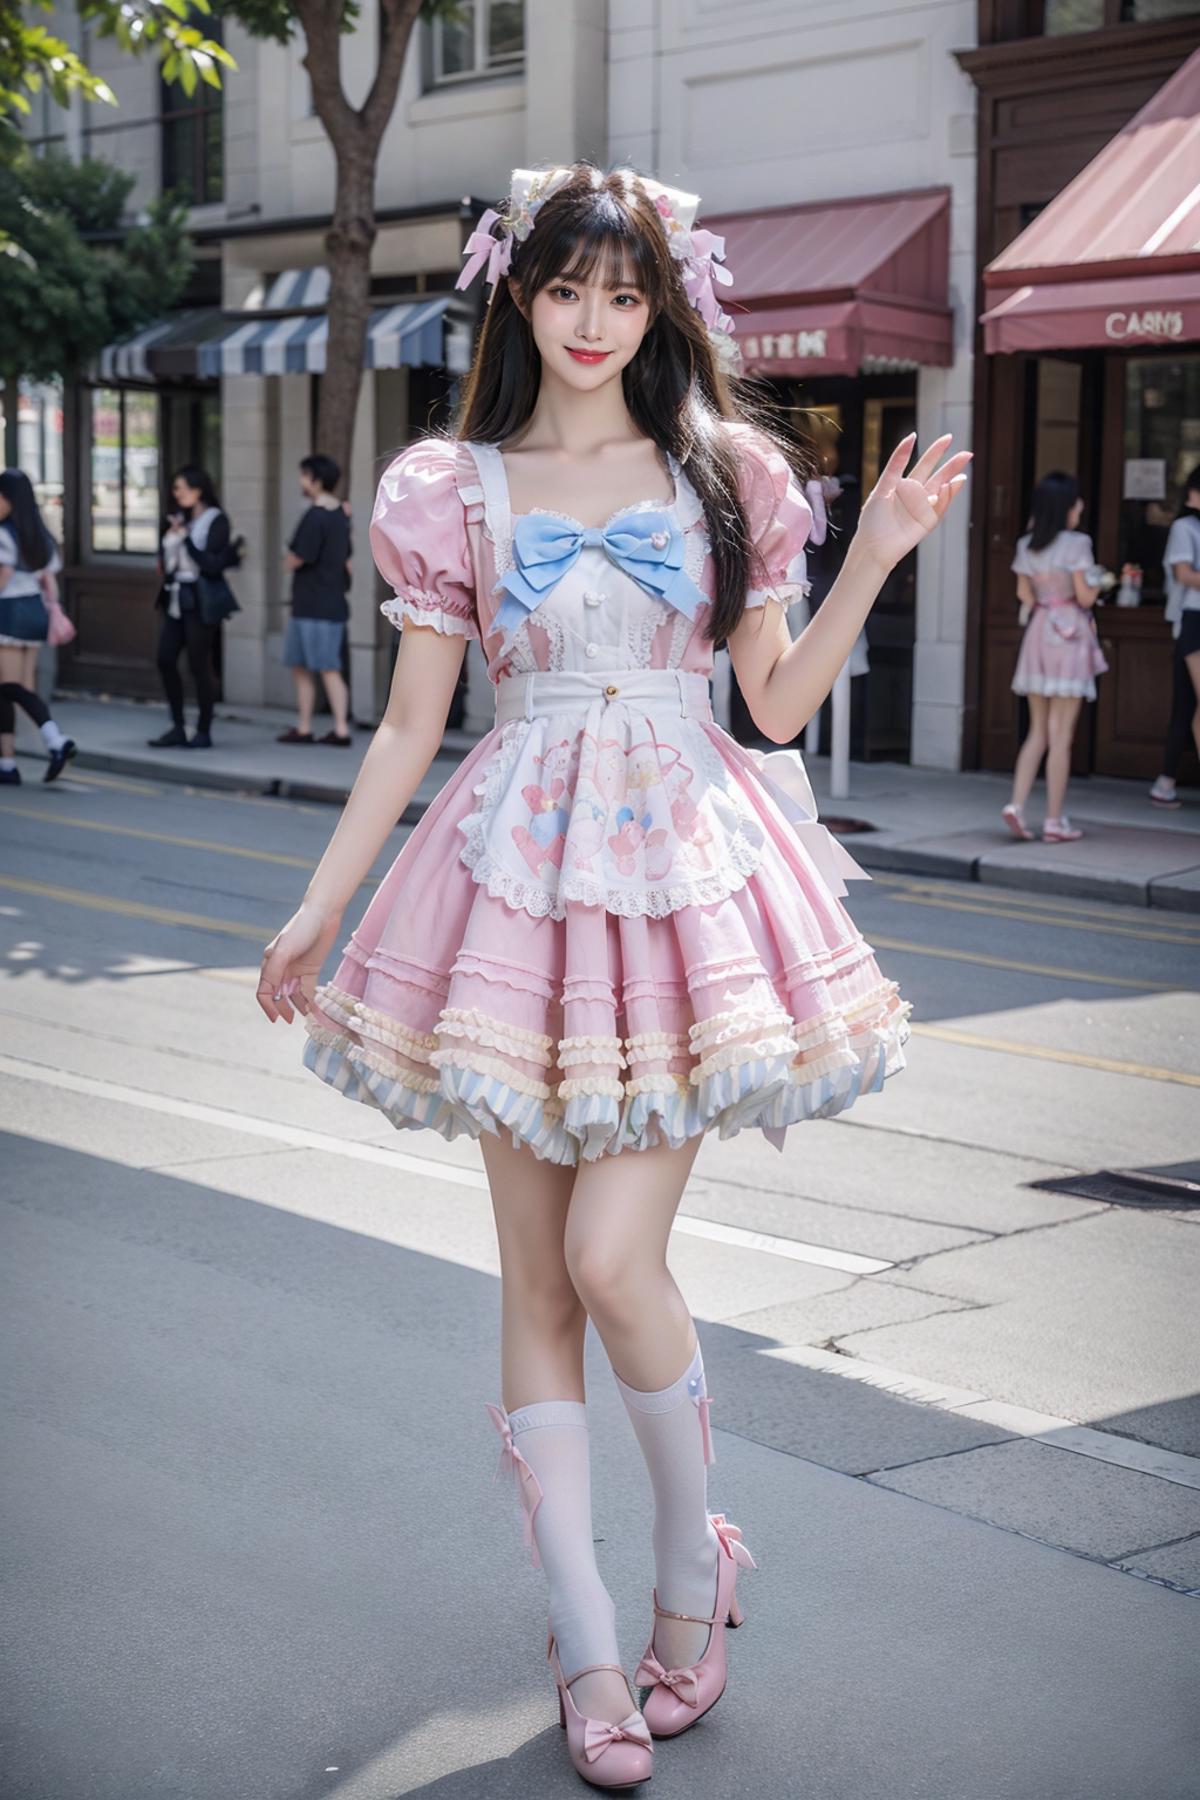 [Realistic] Sweet attire | 甜美系服装 image by cyberAngel_